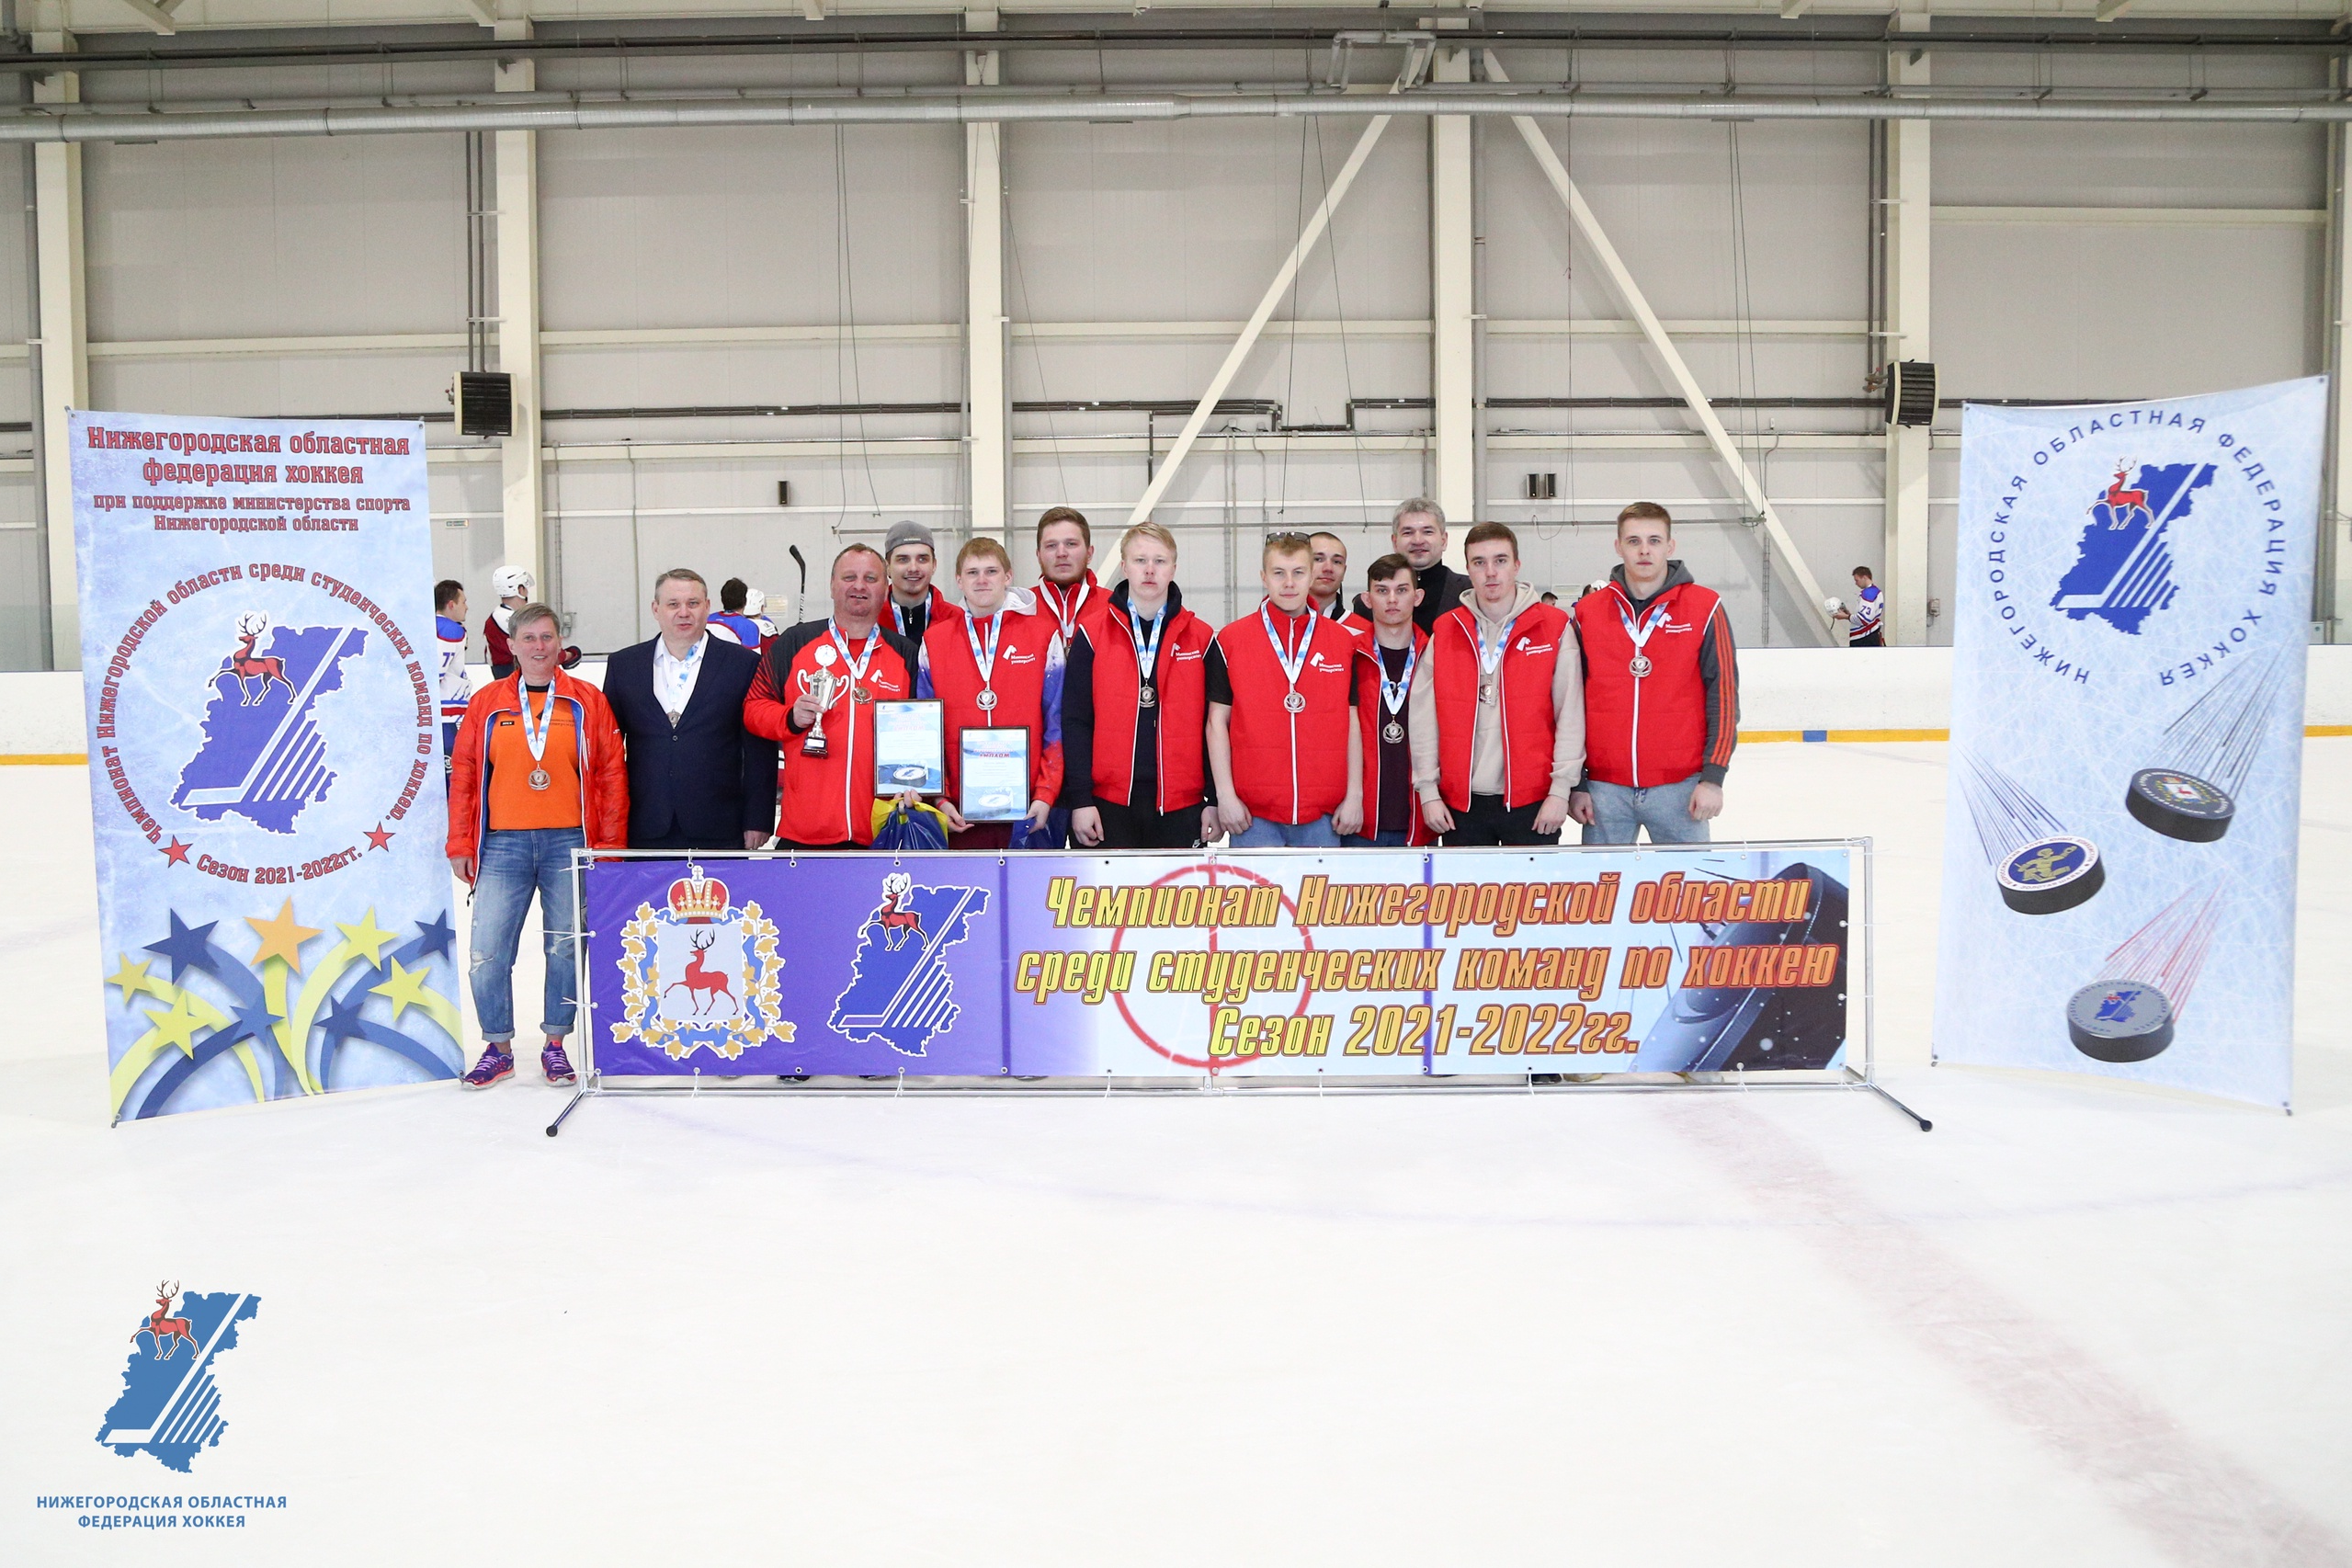 Хоккейная команда Мининского стала призером Чемпионата области среди студентов